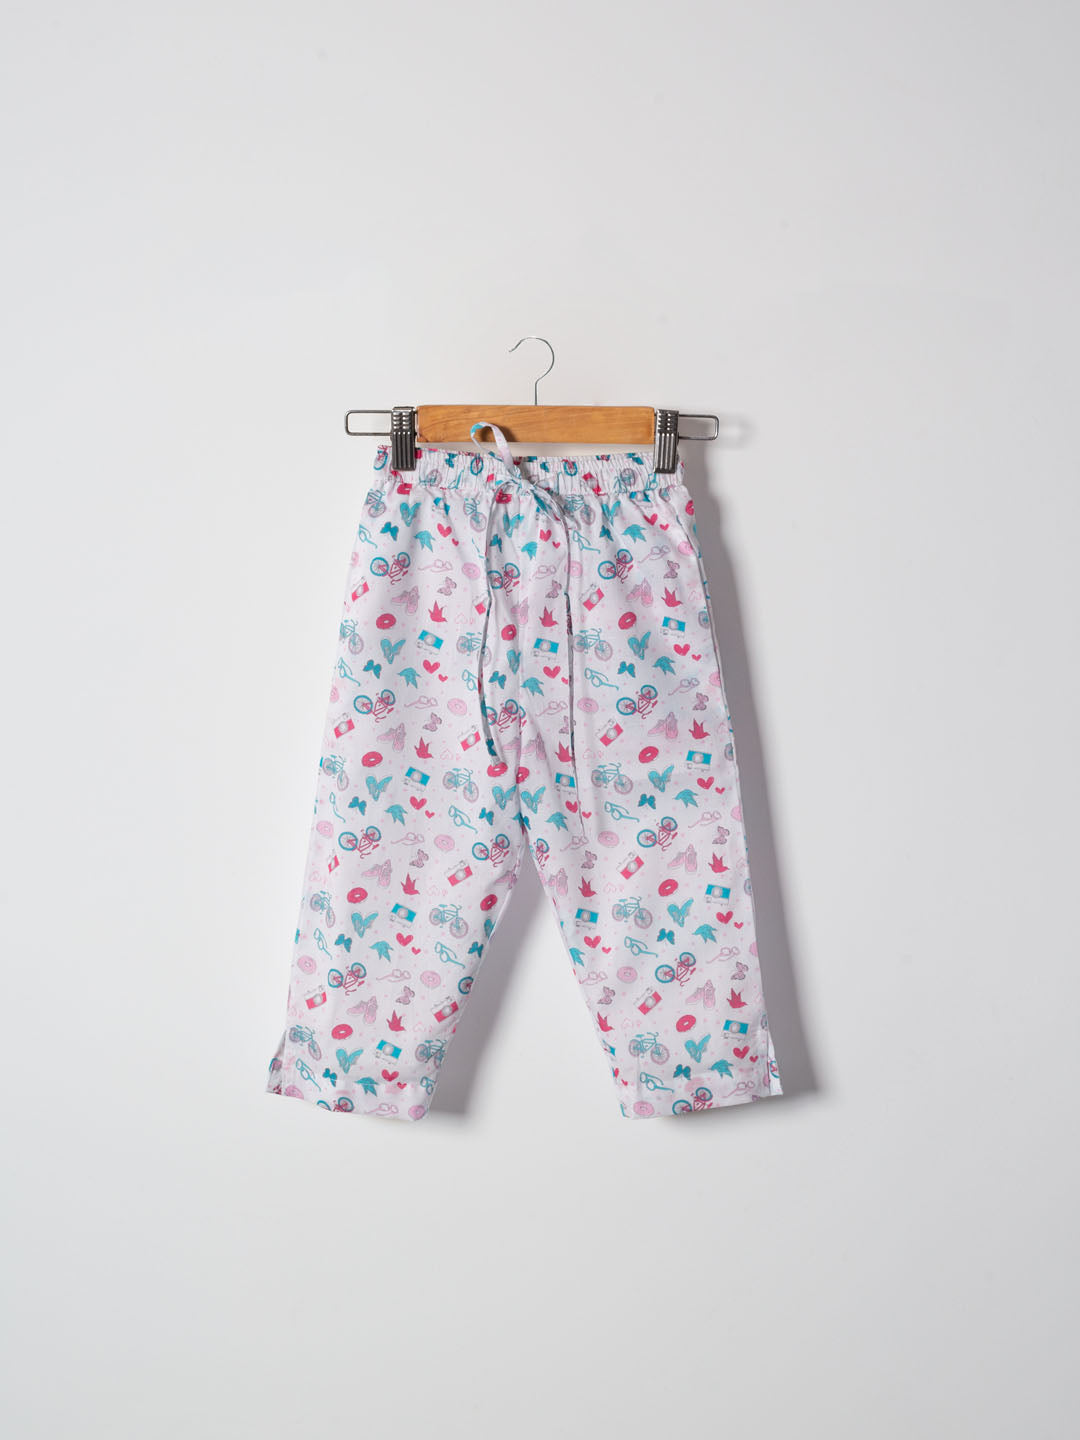 Little Tales Pyjama Set (Unisex)